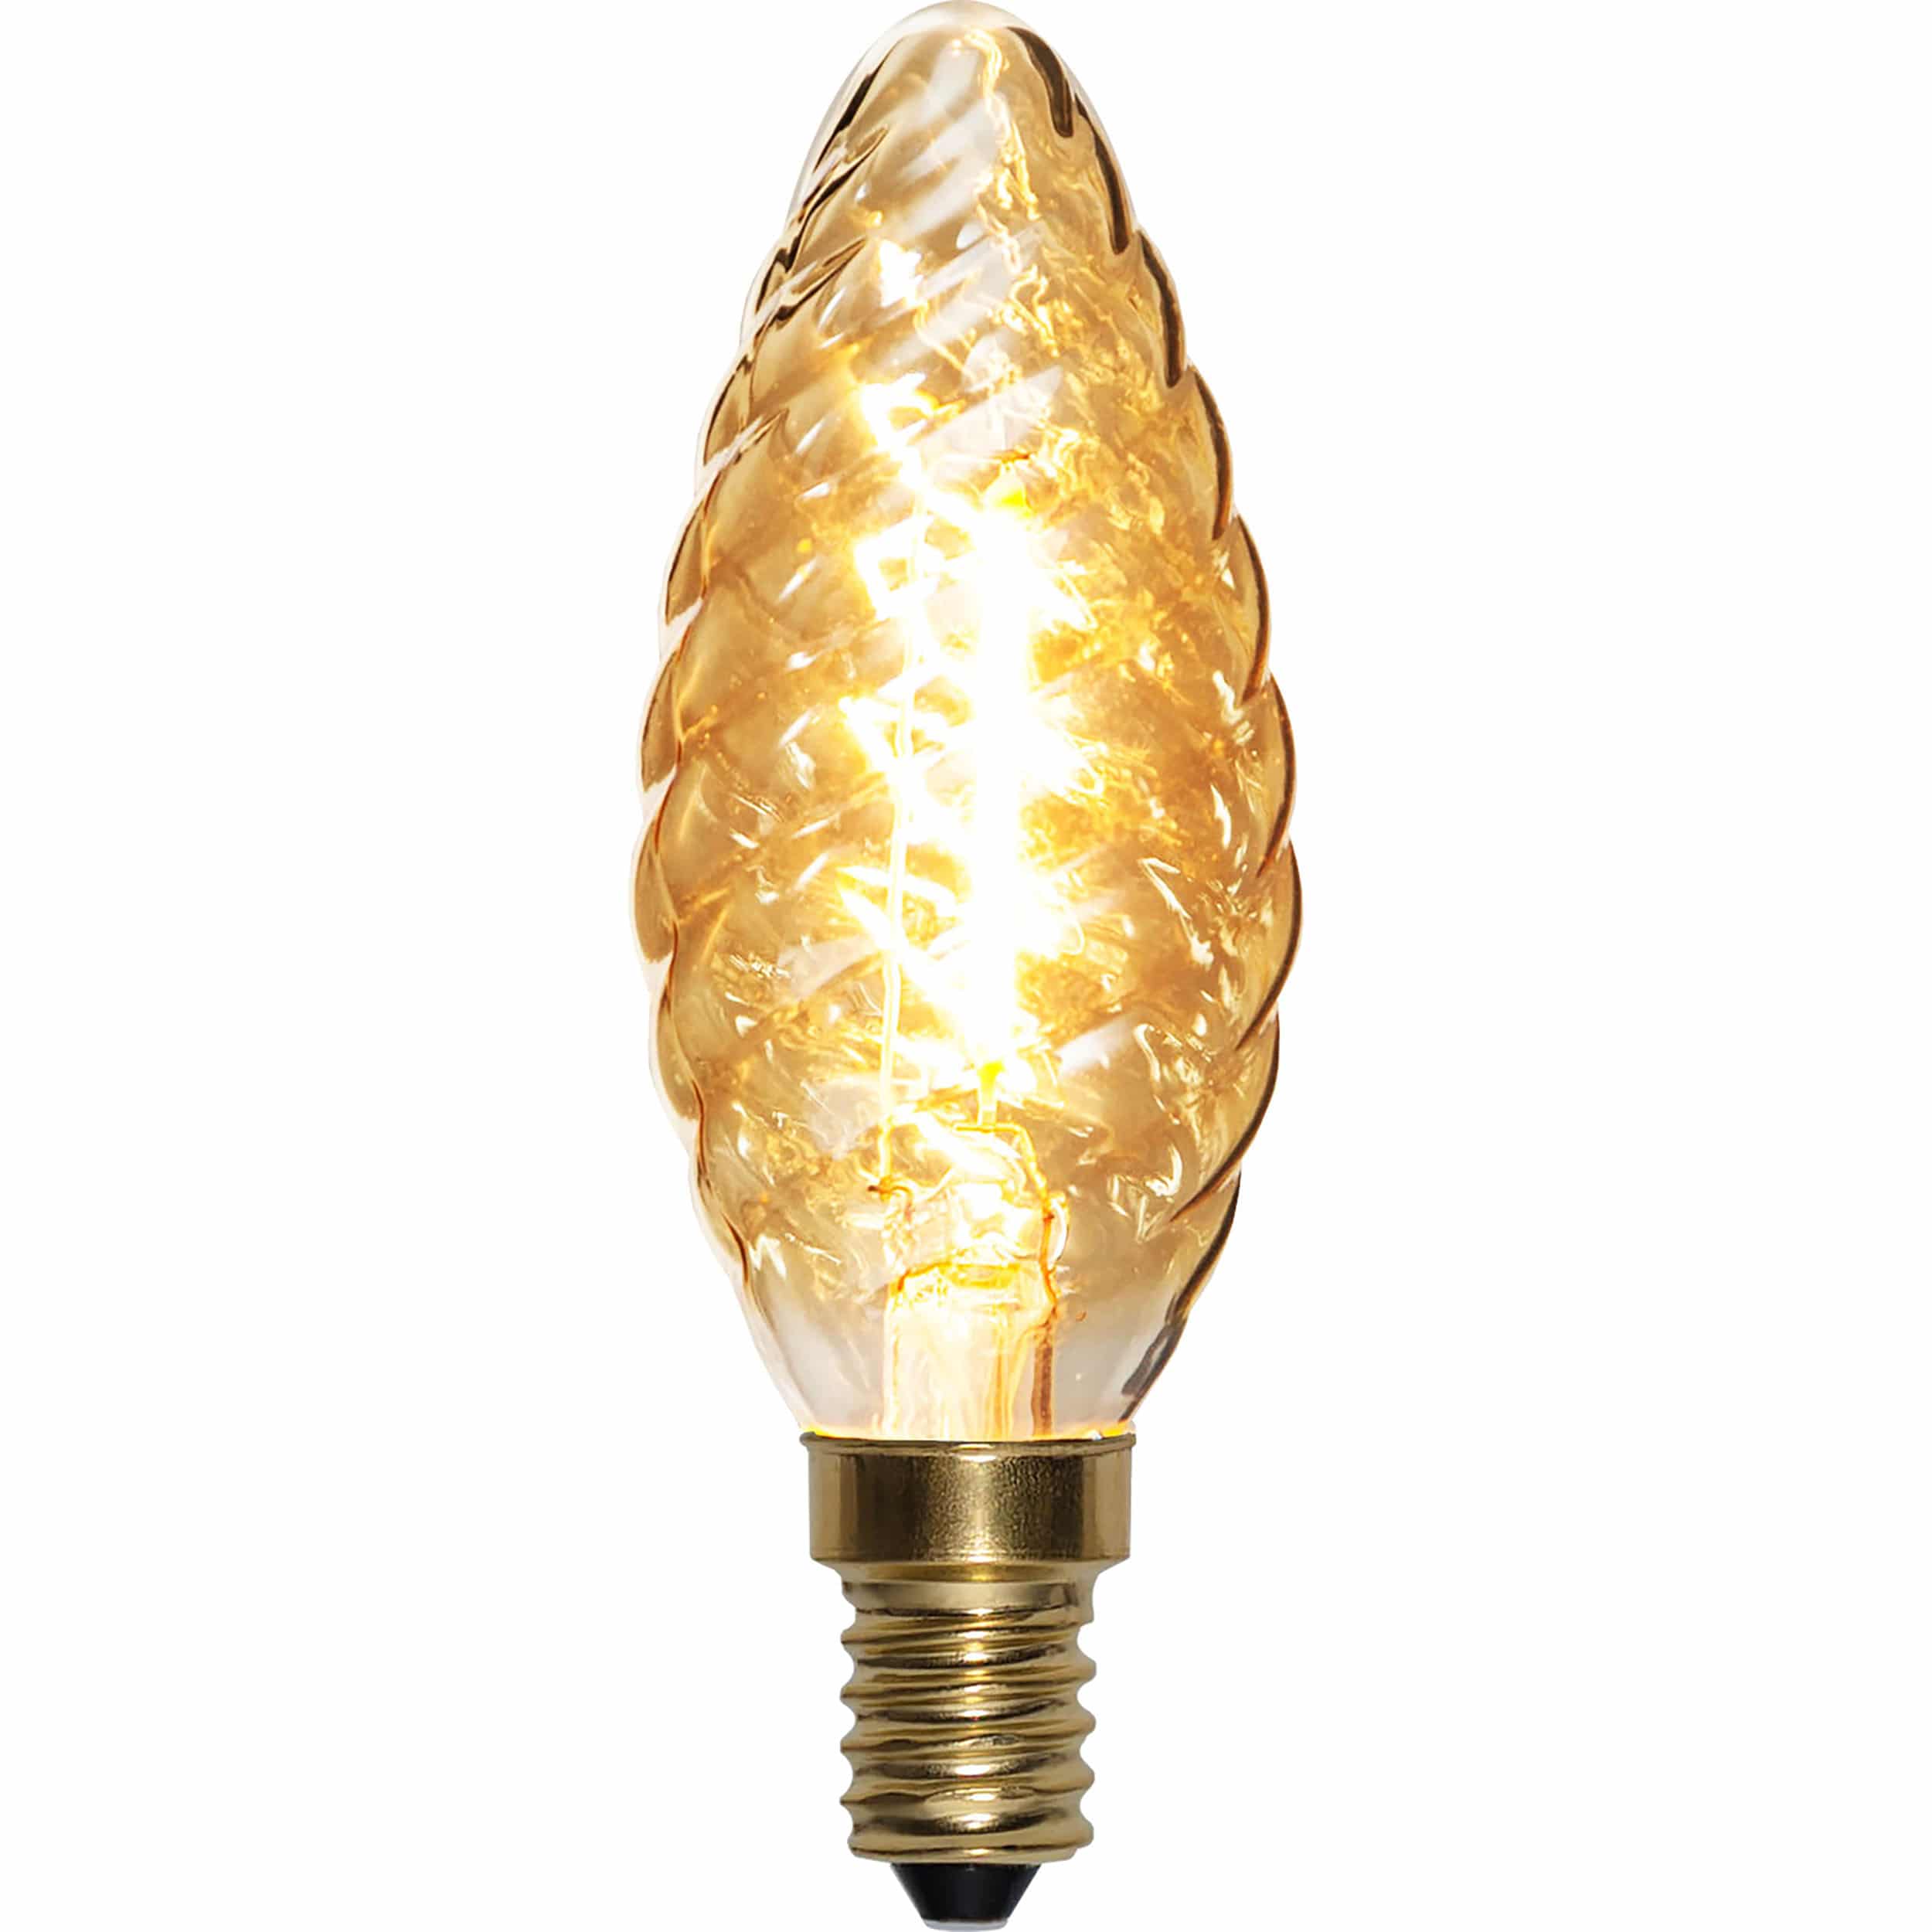 8 x 6 Watt Filament LED Kerze Wind Milchglas E14 DIMMBAR Warmweiß 2700K ~60 Watt